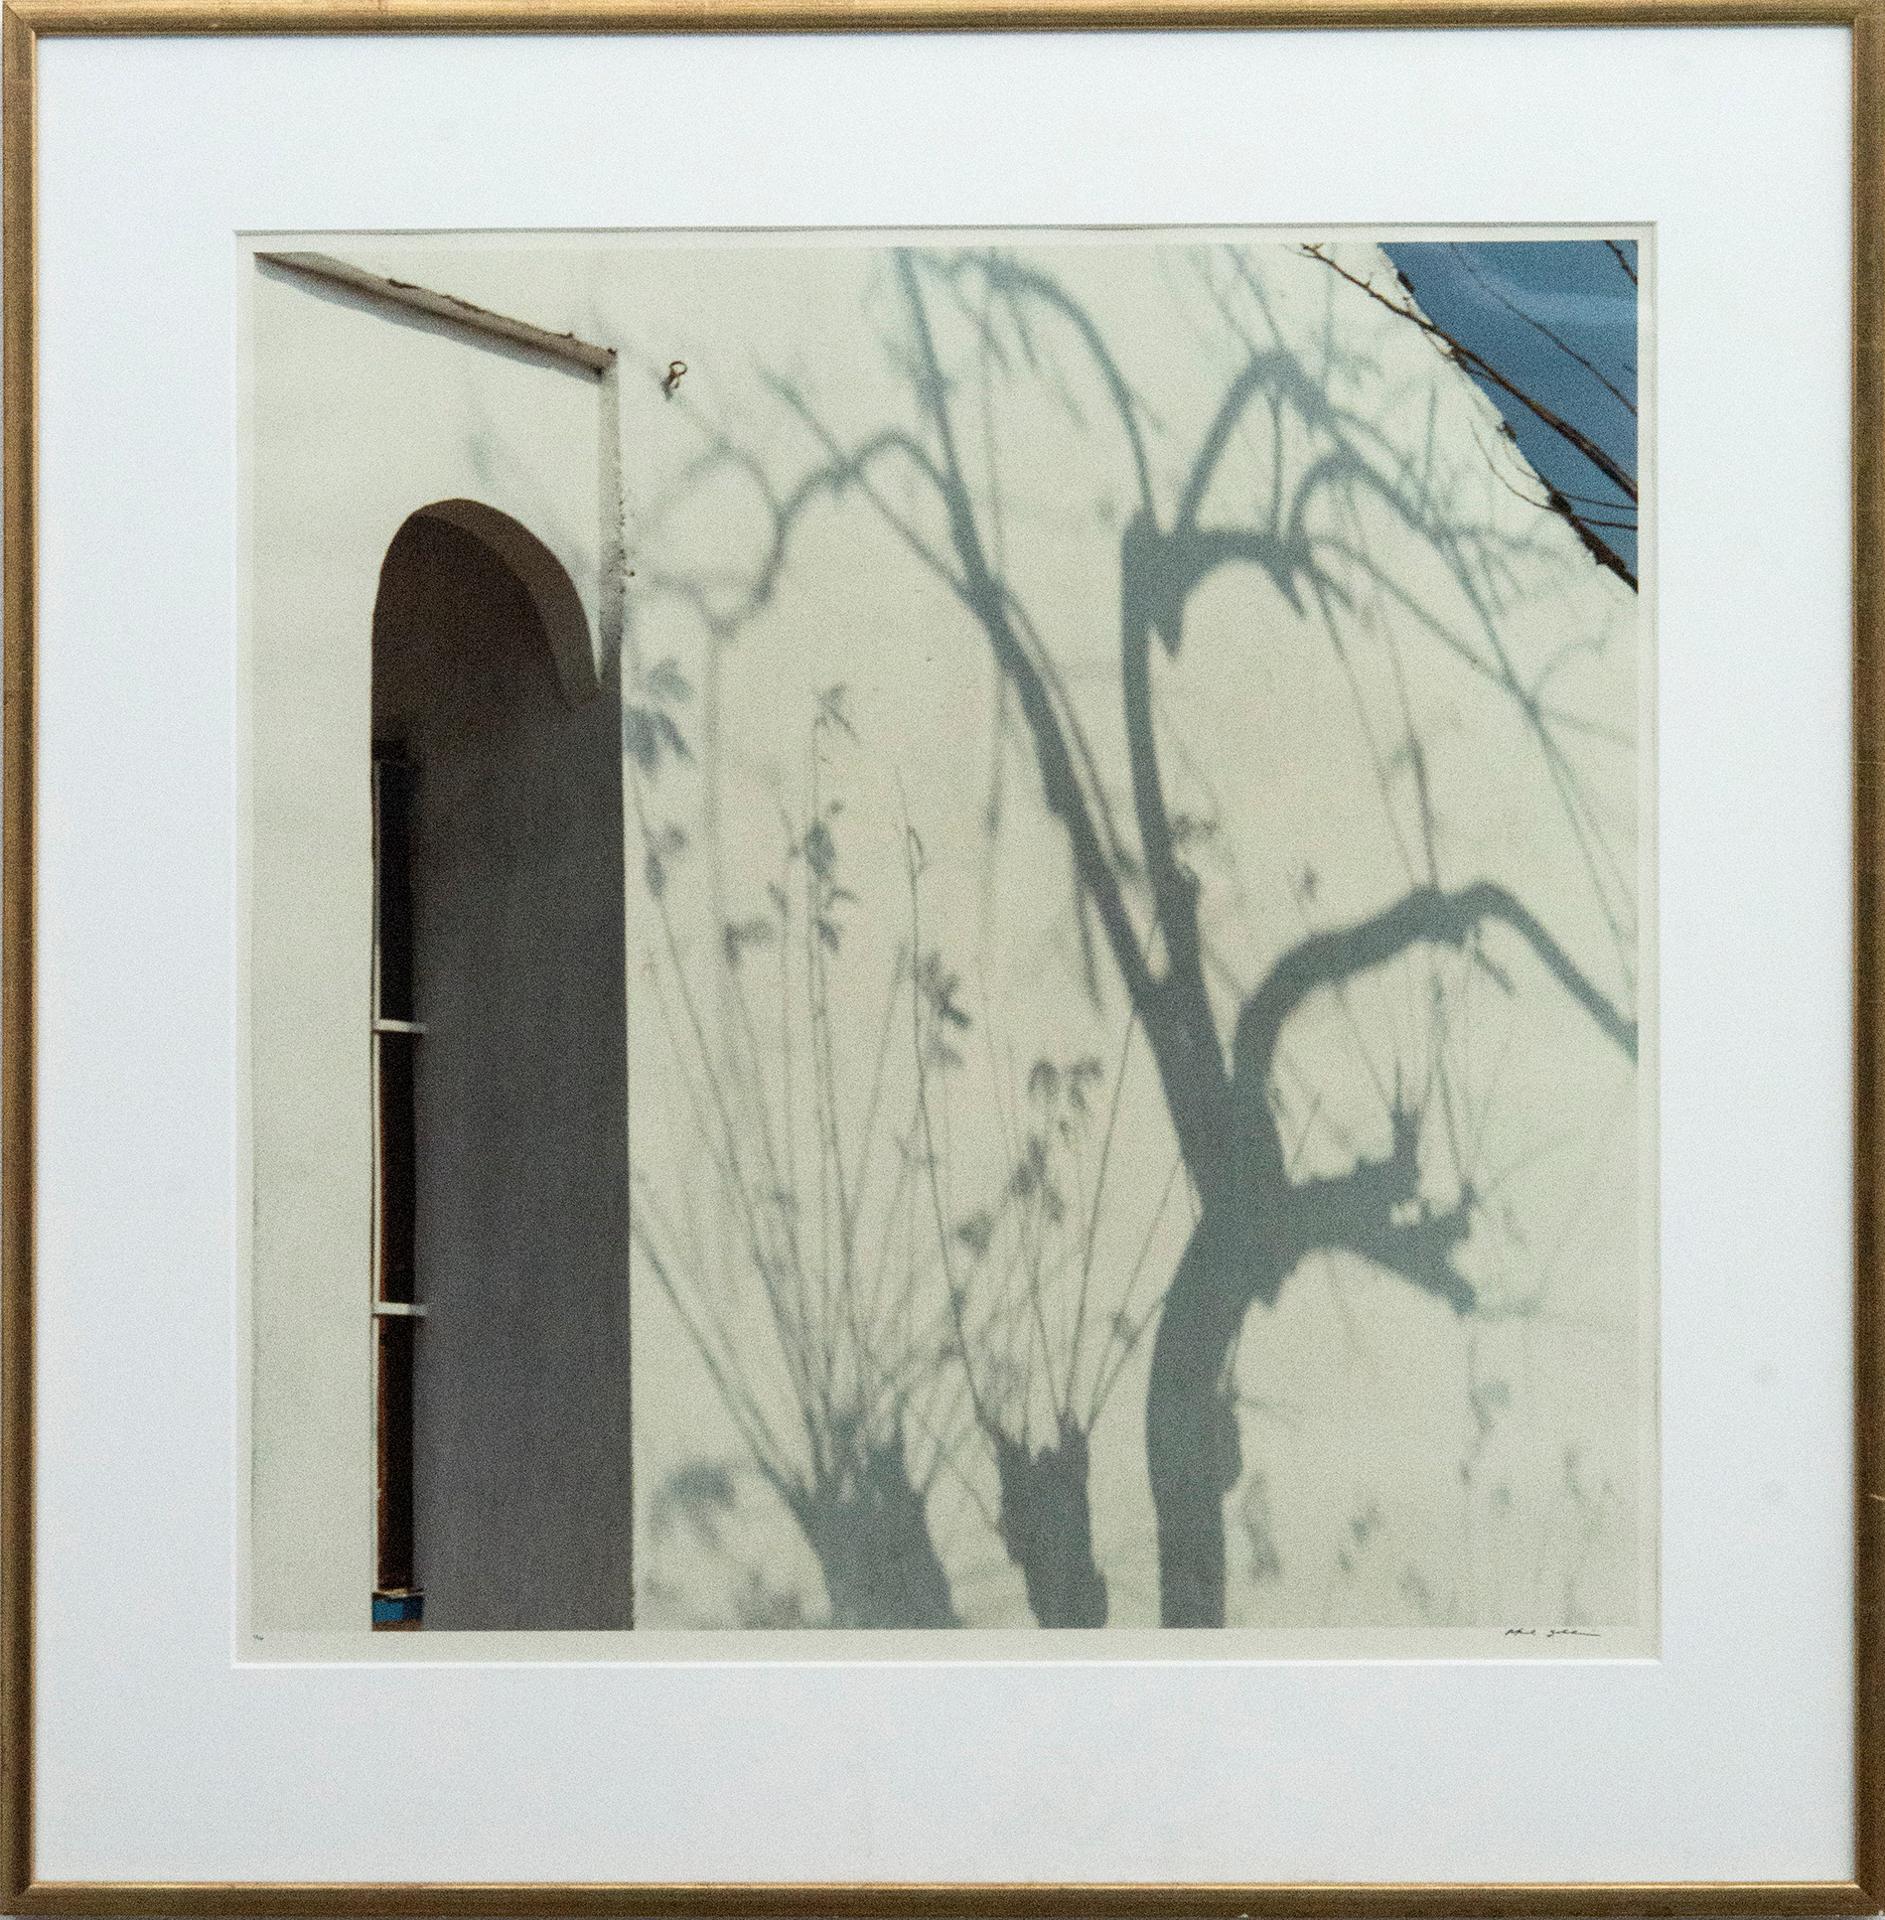 Rafael Goldchain (1953) - Tree Shadows on White House, 1989